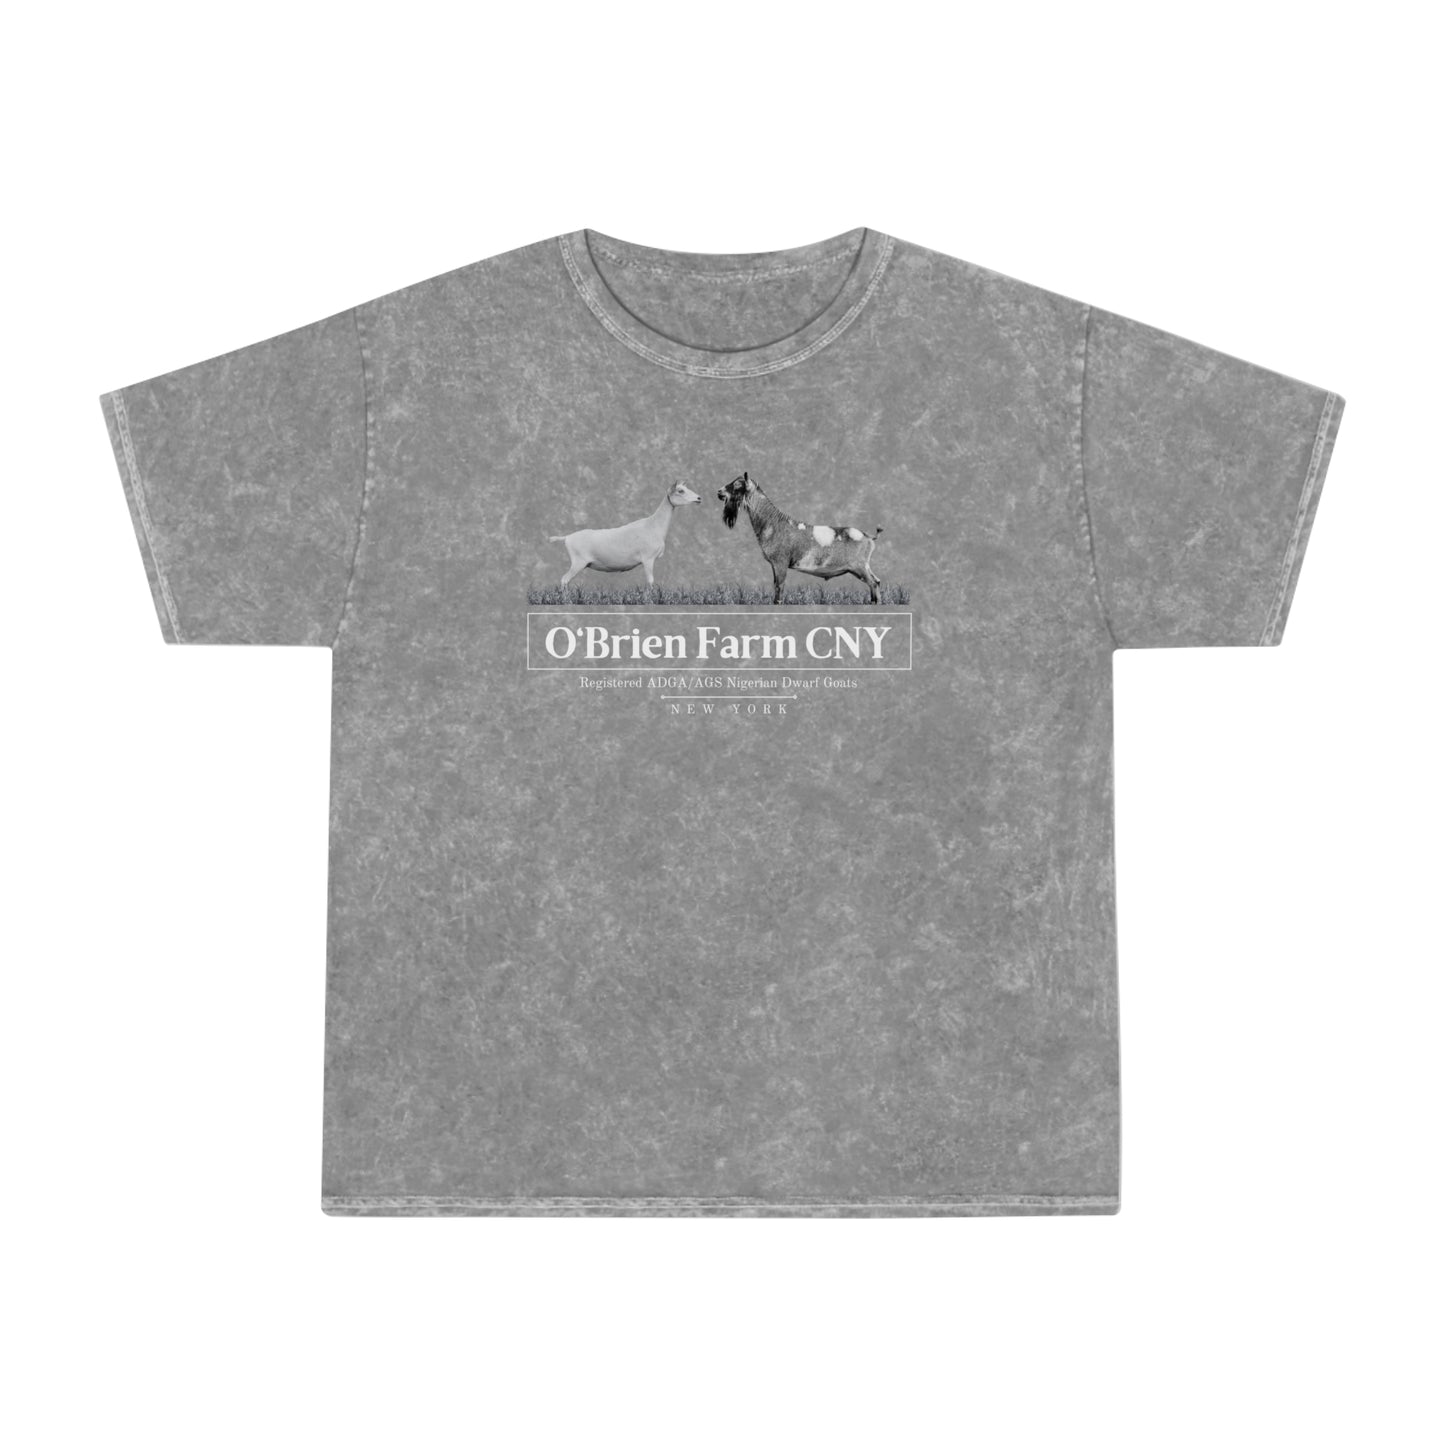 ** Unisex ** Mineral Wash T-Shirt "O'Brien Farm CNY"